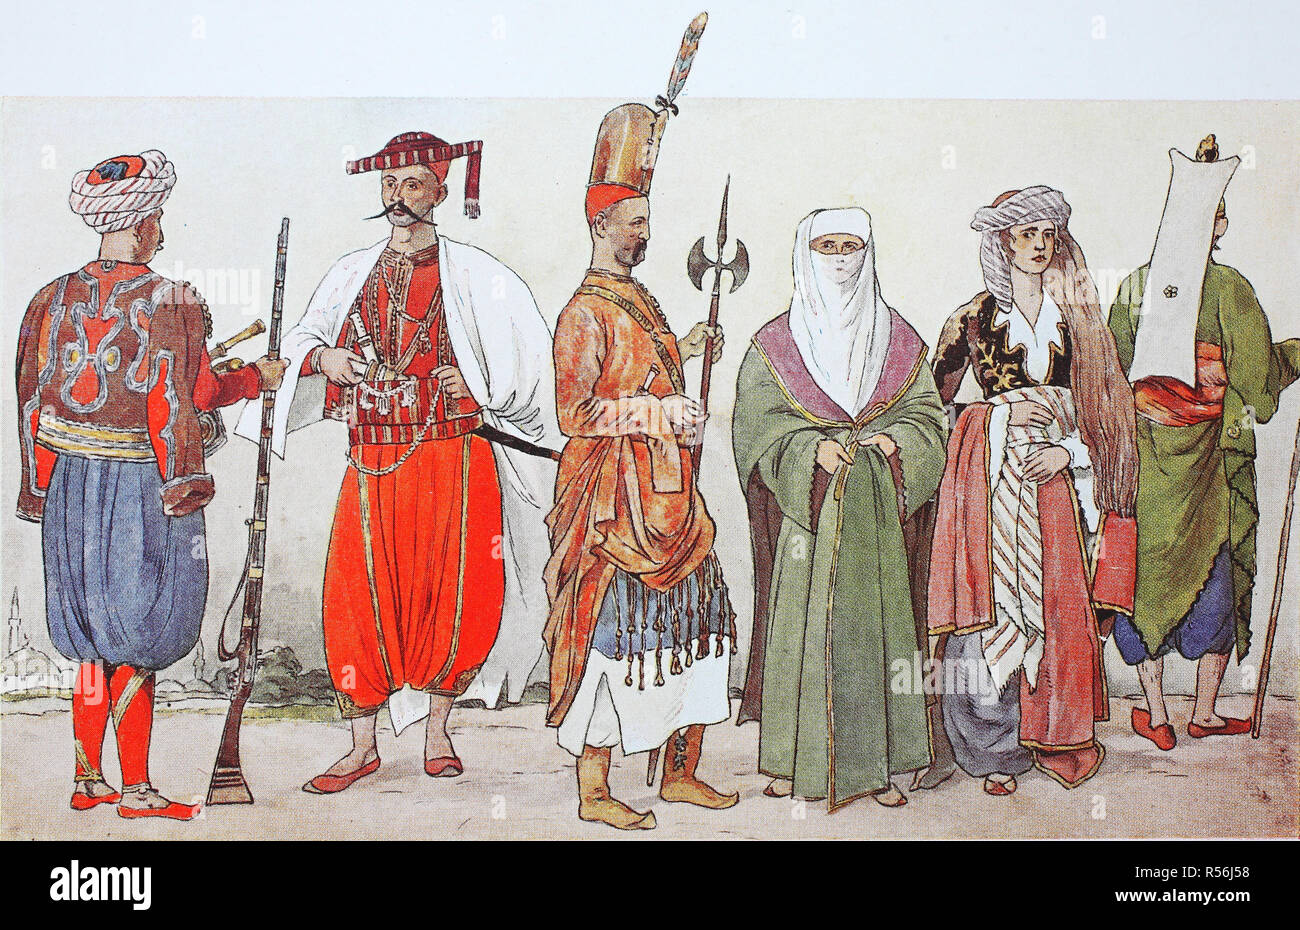 La mode, les vêtements, les costumes historiques en Turquie à partir de 1800, 1825, les soldats et les femmes, illustration, Turquie Banque D'Images